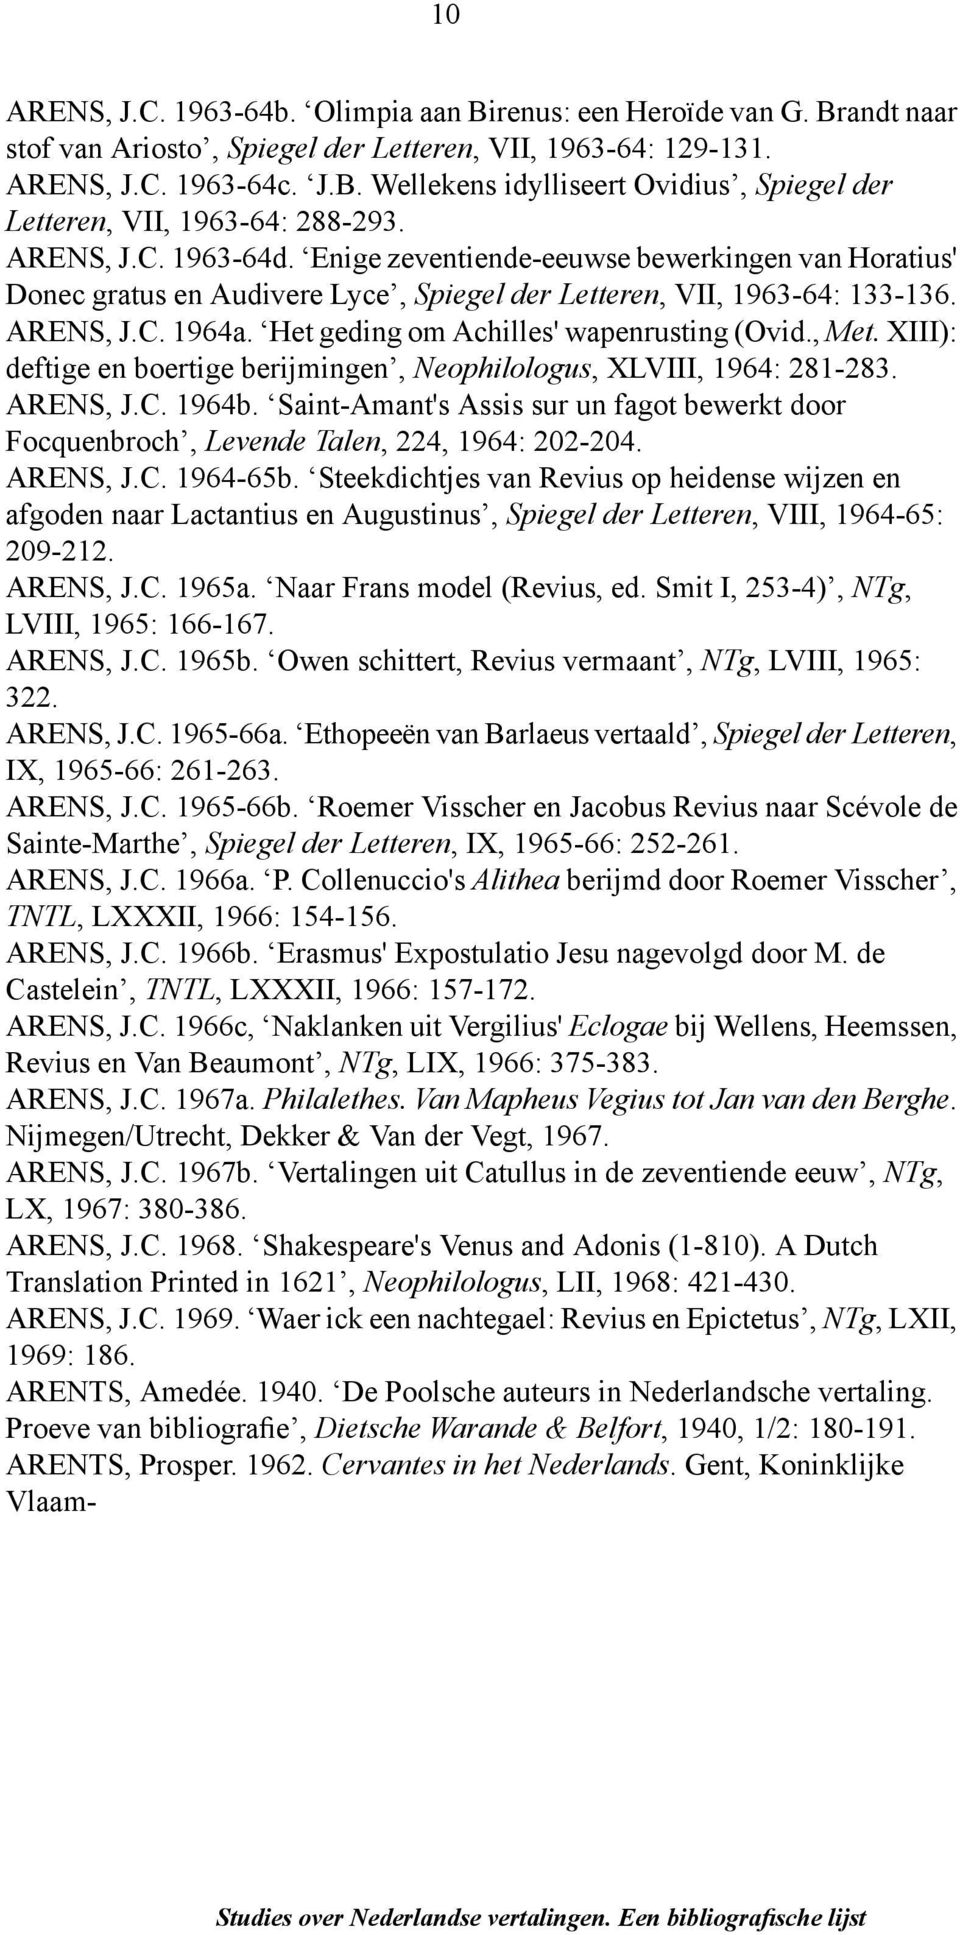 Het geding om Achilles' wapenrusting (Ovid., Met. XIII): deftige en boertige berijmingen, Neophilologus, XLVIII, 1964: 281-283. ARENS, J.C. 1964b.